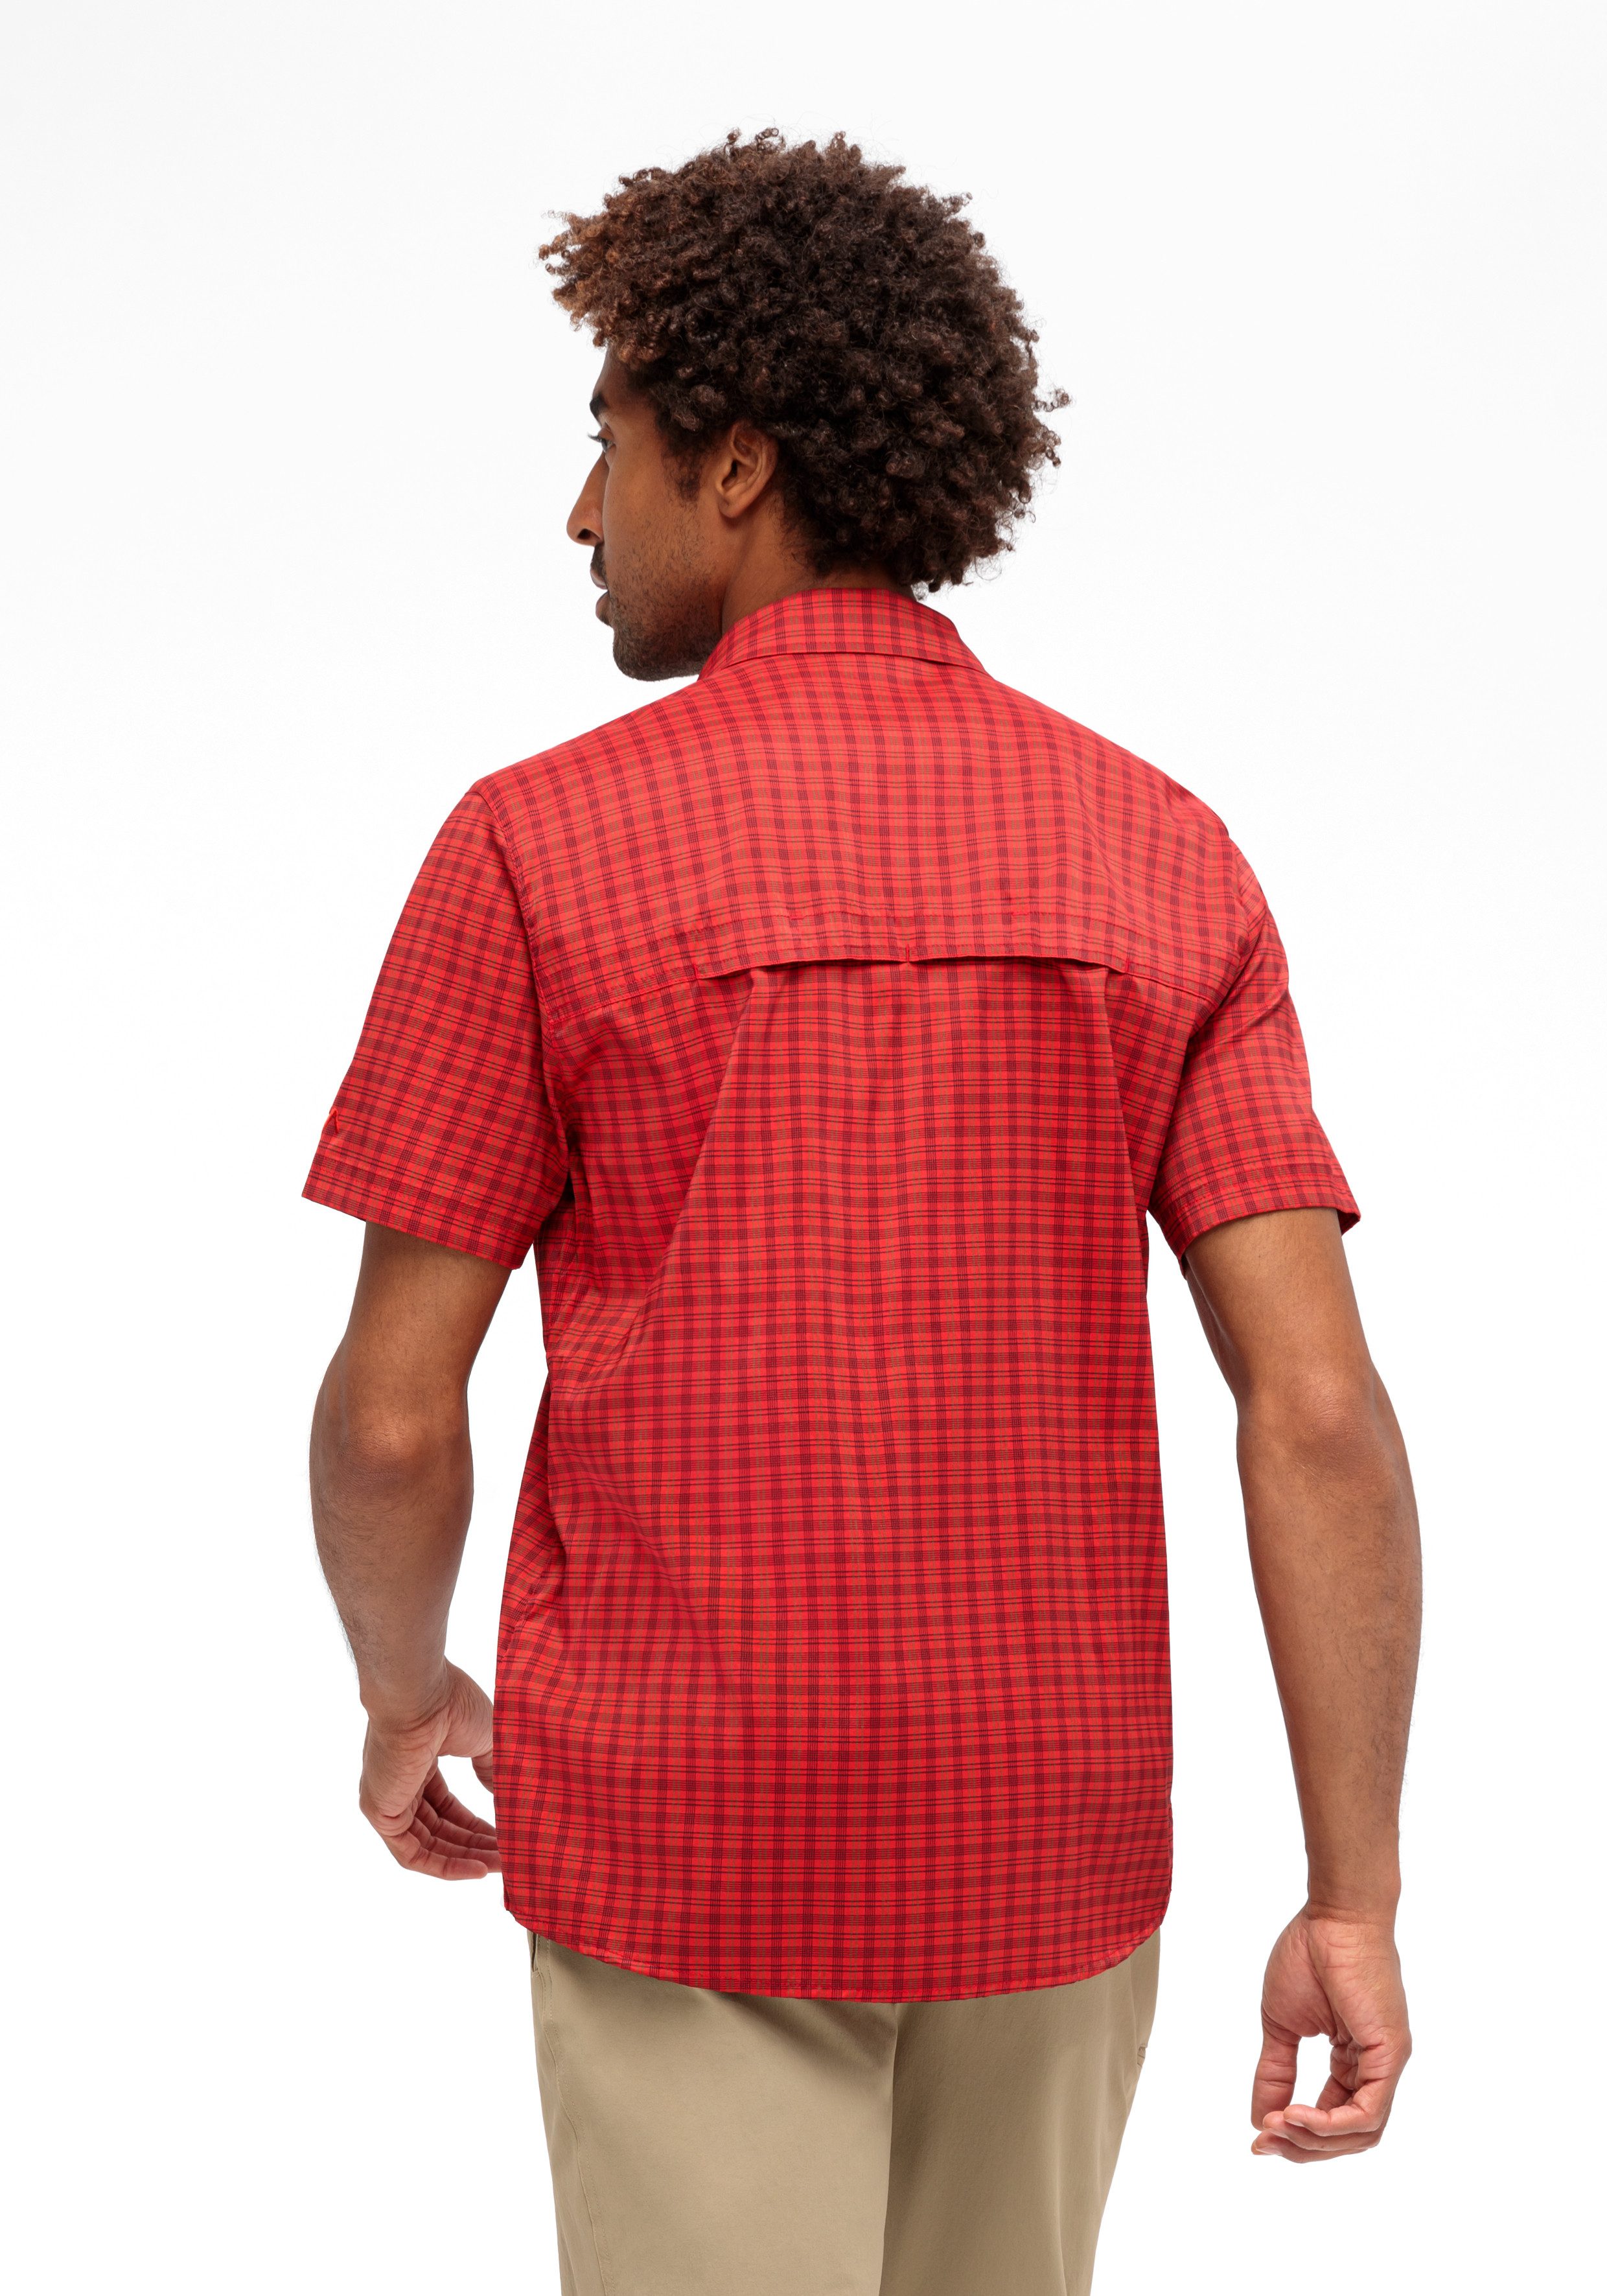 Maier Sports Functioneel shirt Mats S S Droogt bijzonder snel dankzij dryprotec-technologie